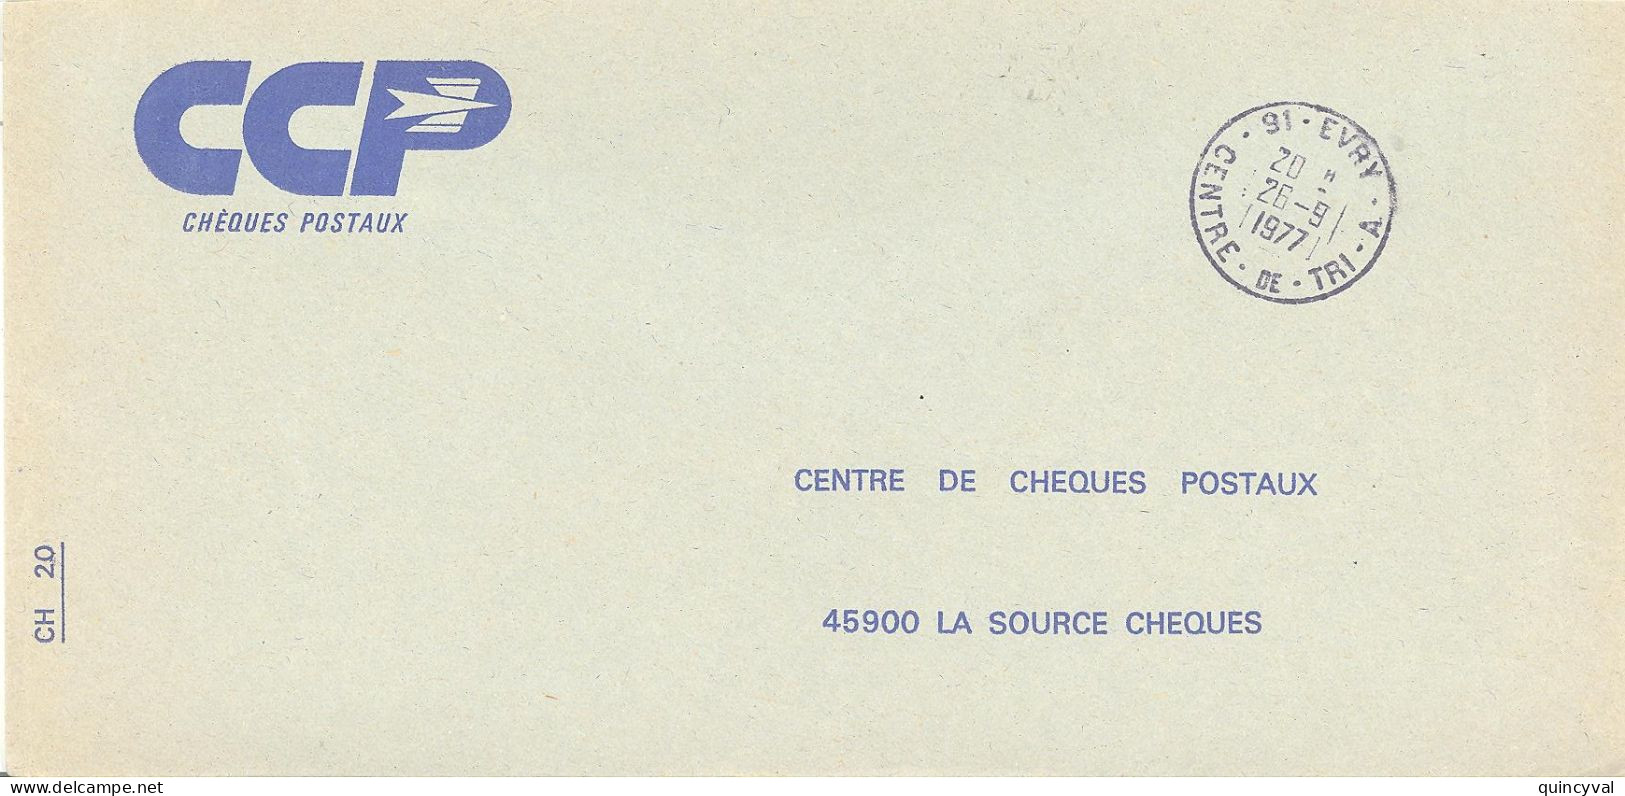 91 EVRY  CENTRE DE TRI  A   Lettre Enveloppe Des CCP Ob26 9 1977 - Cachets Manuels